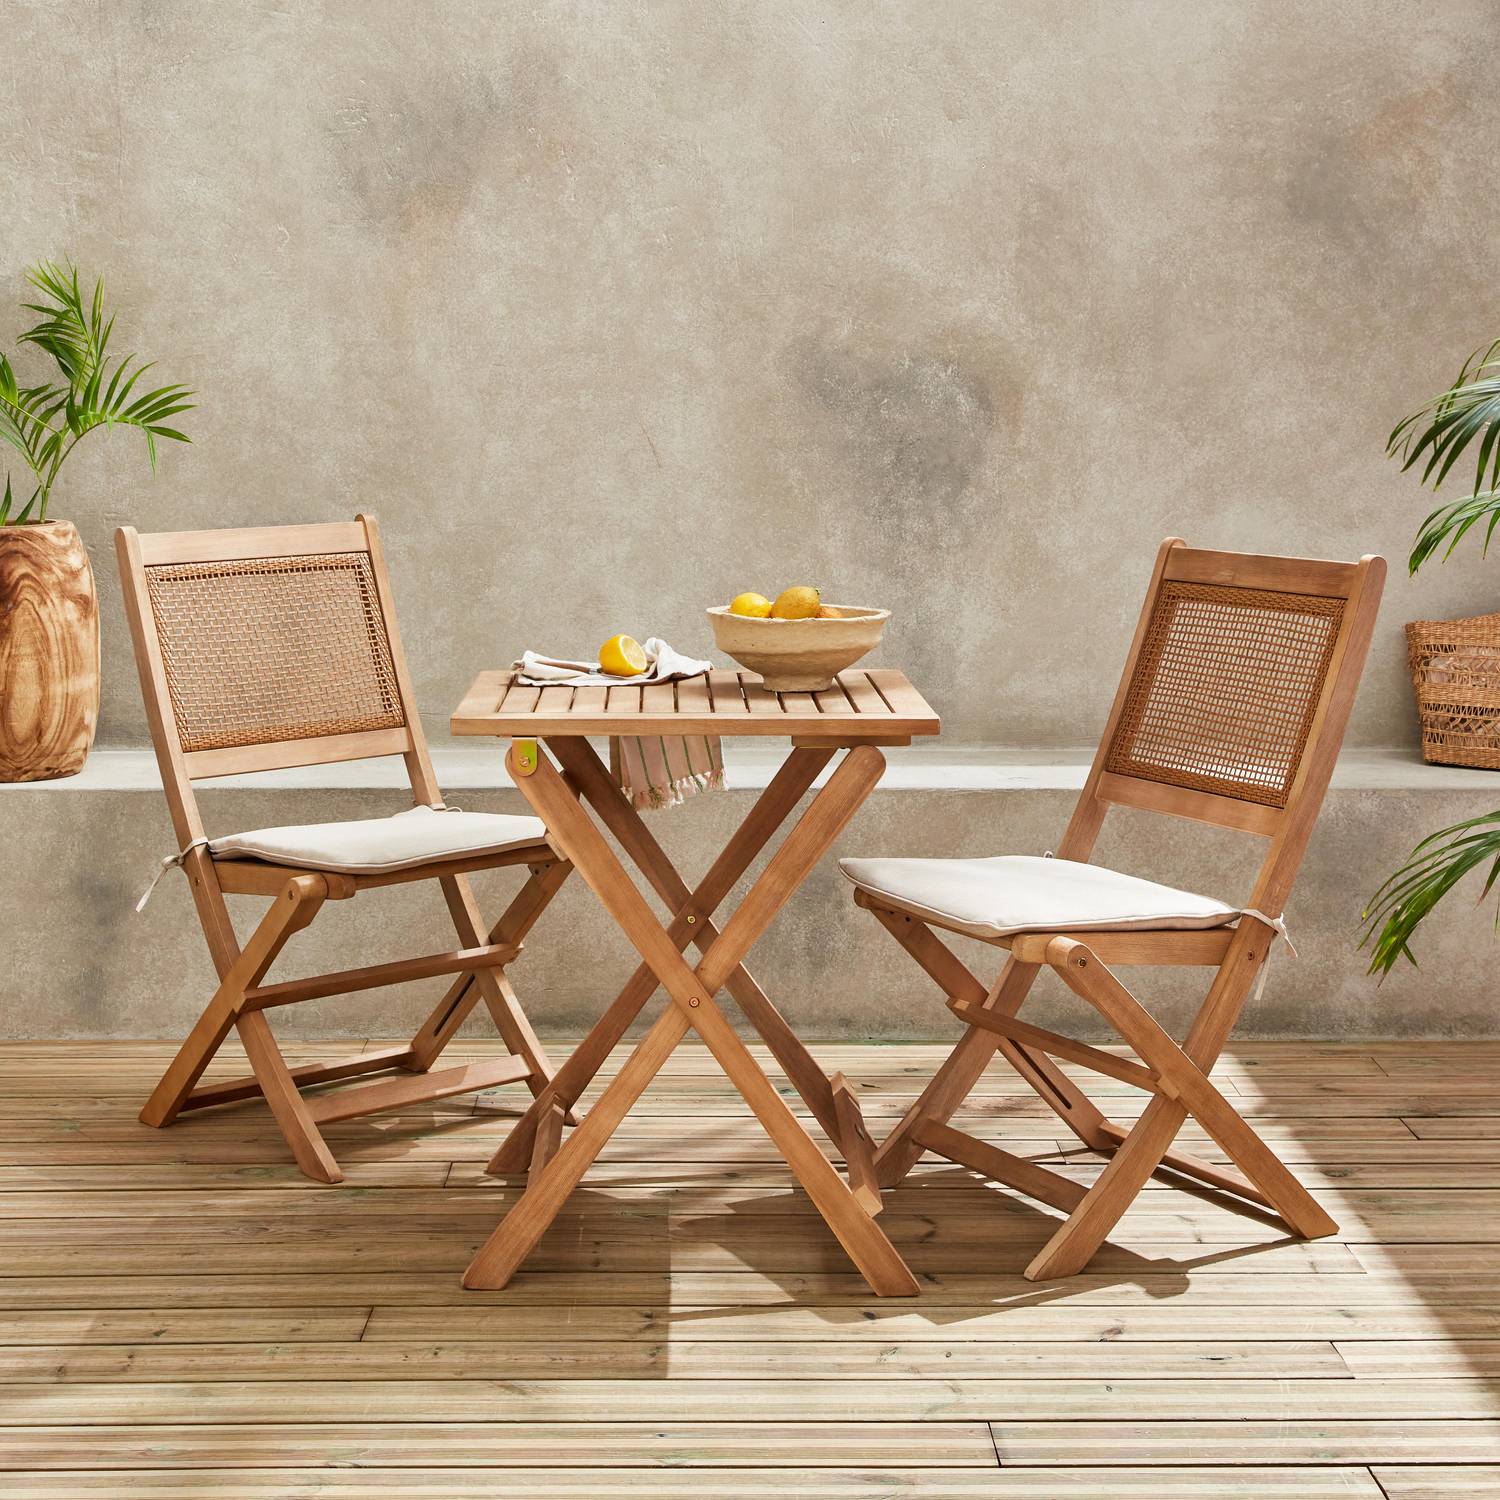 Table de jardin bistrot avec siège carré en osier pour 2 personnes, acacia FSC légèrement brossé, 1 table, 2 chaises 60x60x72 cm Photo1